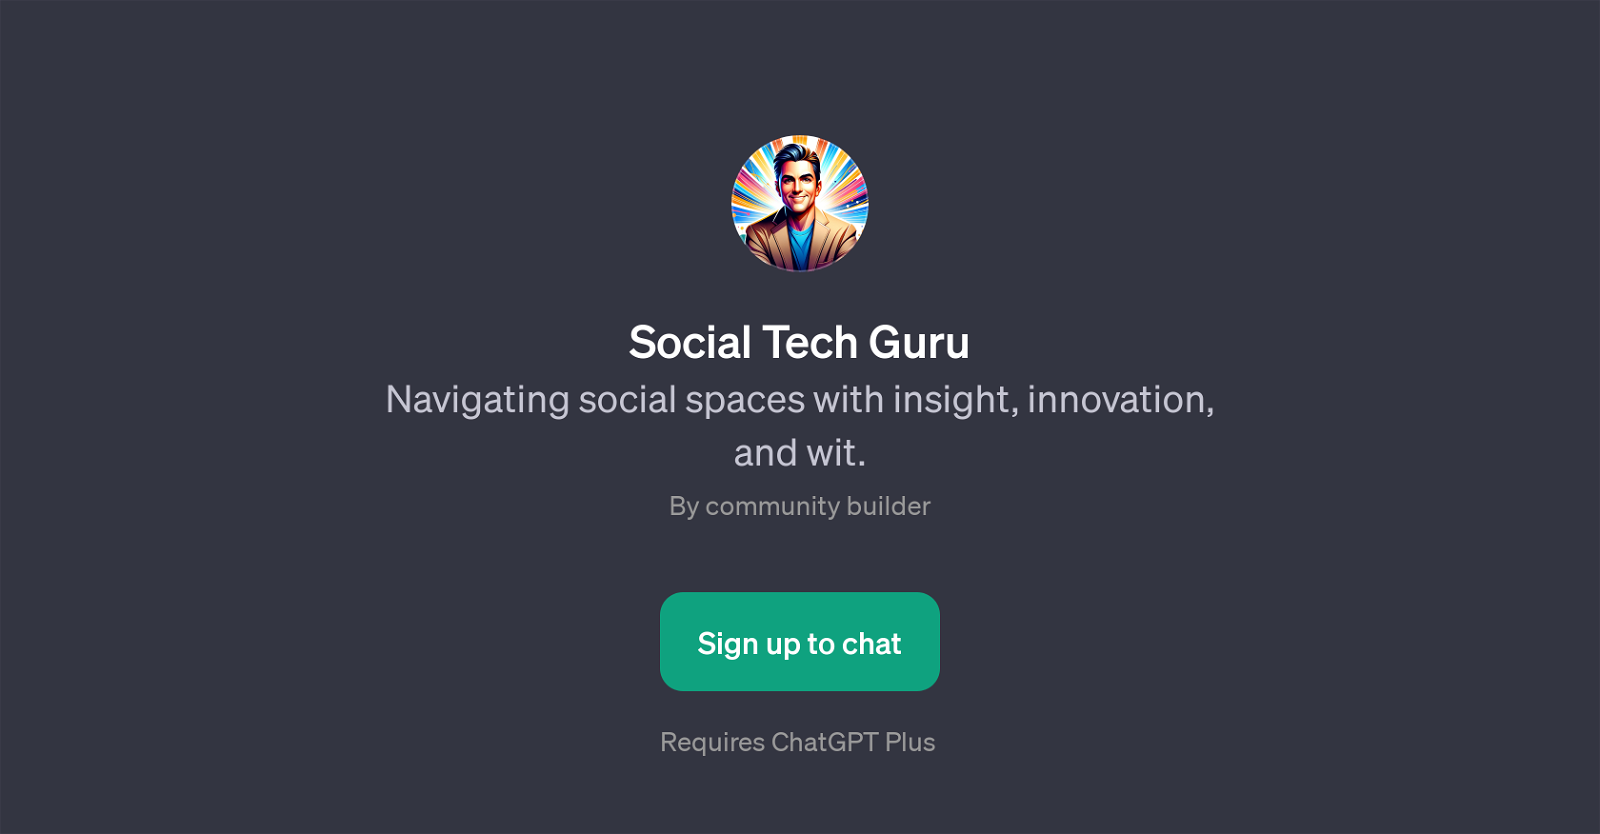 Social Tech Guru website